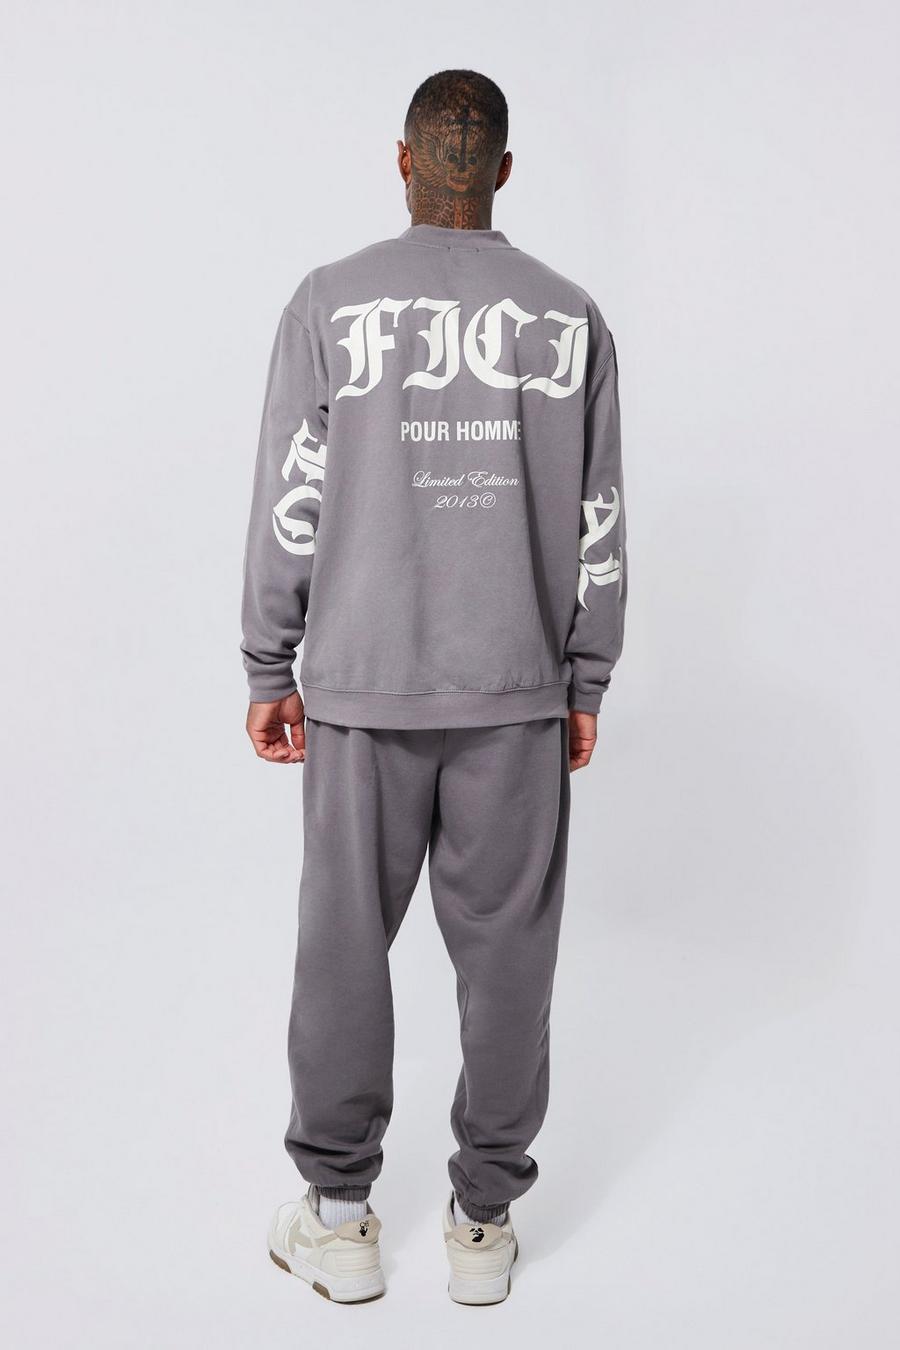 Charcoal grey Oversized Graphic Sweatshirt Tracksuit